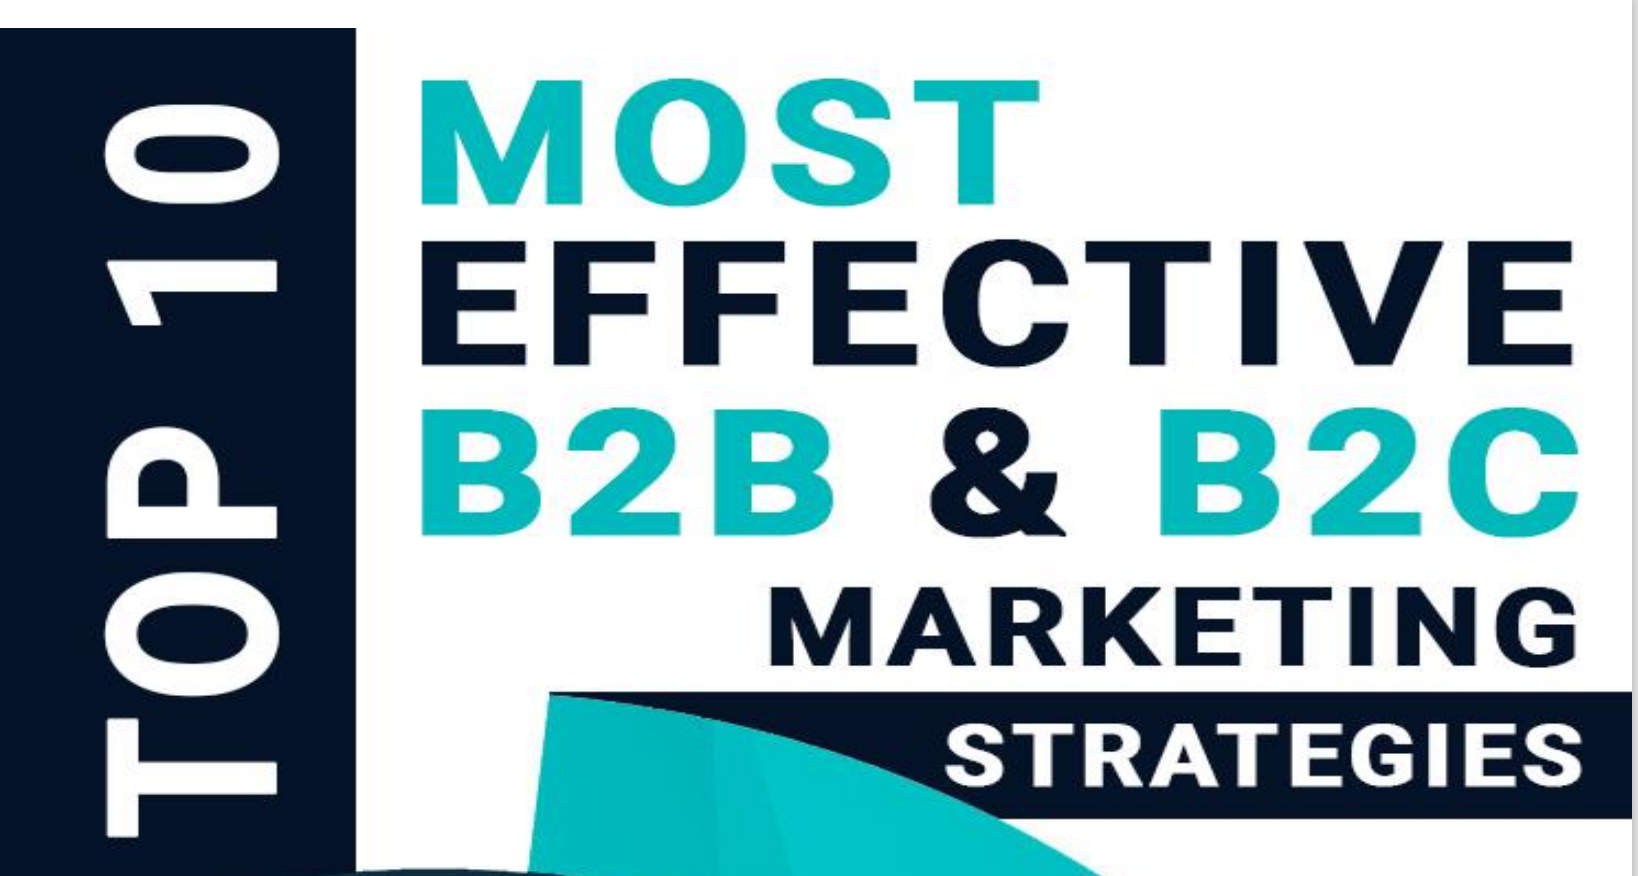 Top 10 B2B &amp; B2C Marketing Strategies 